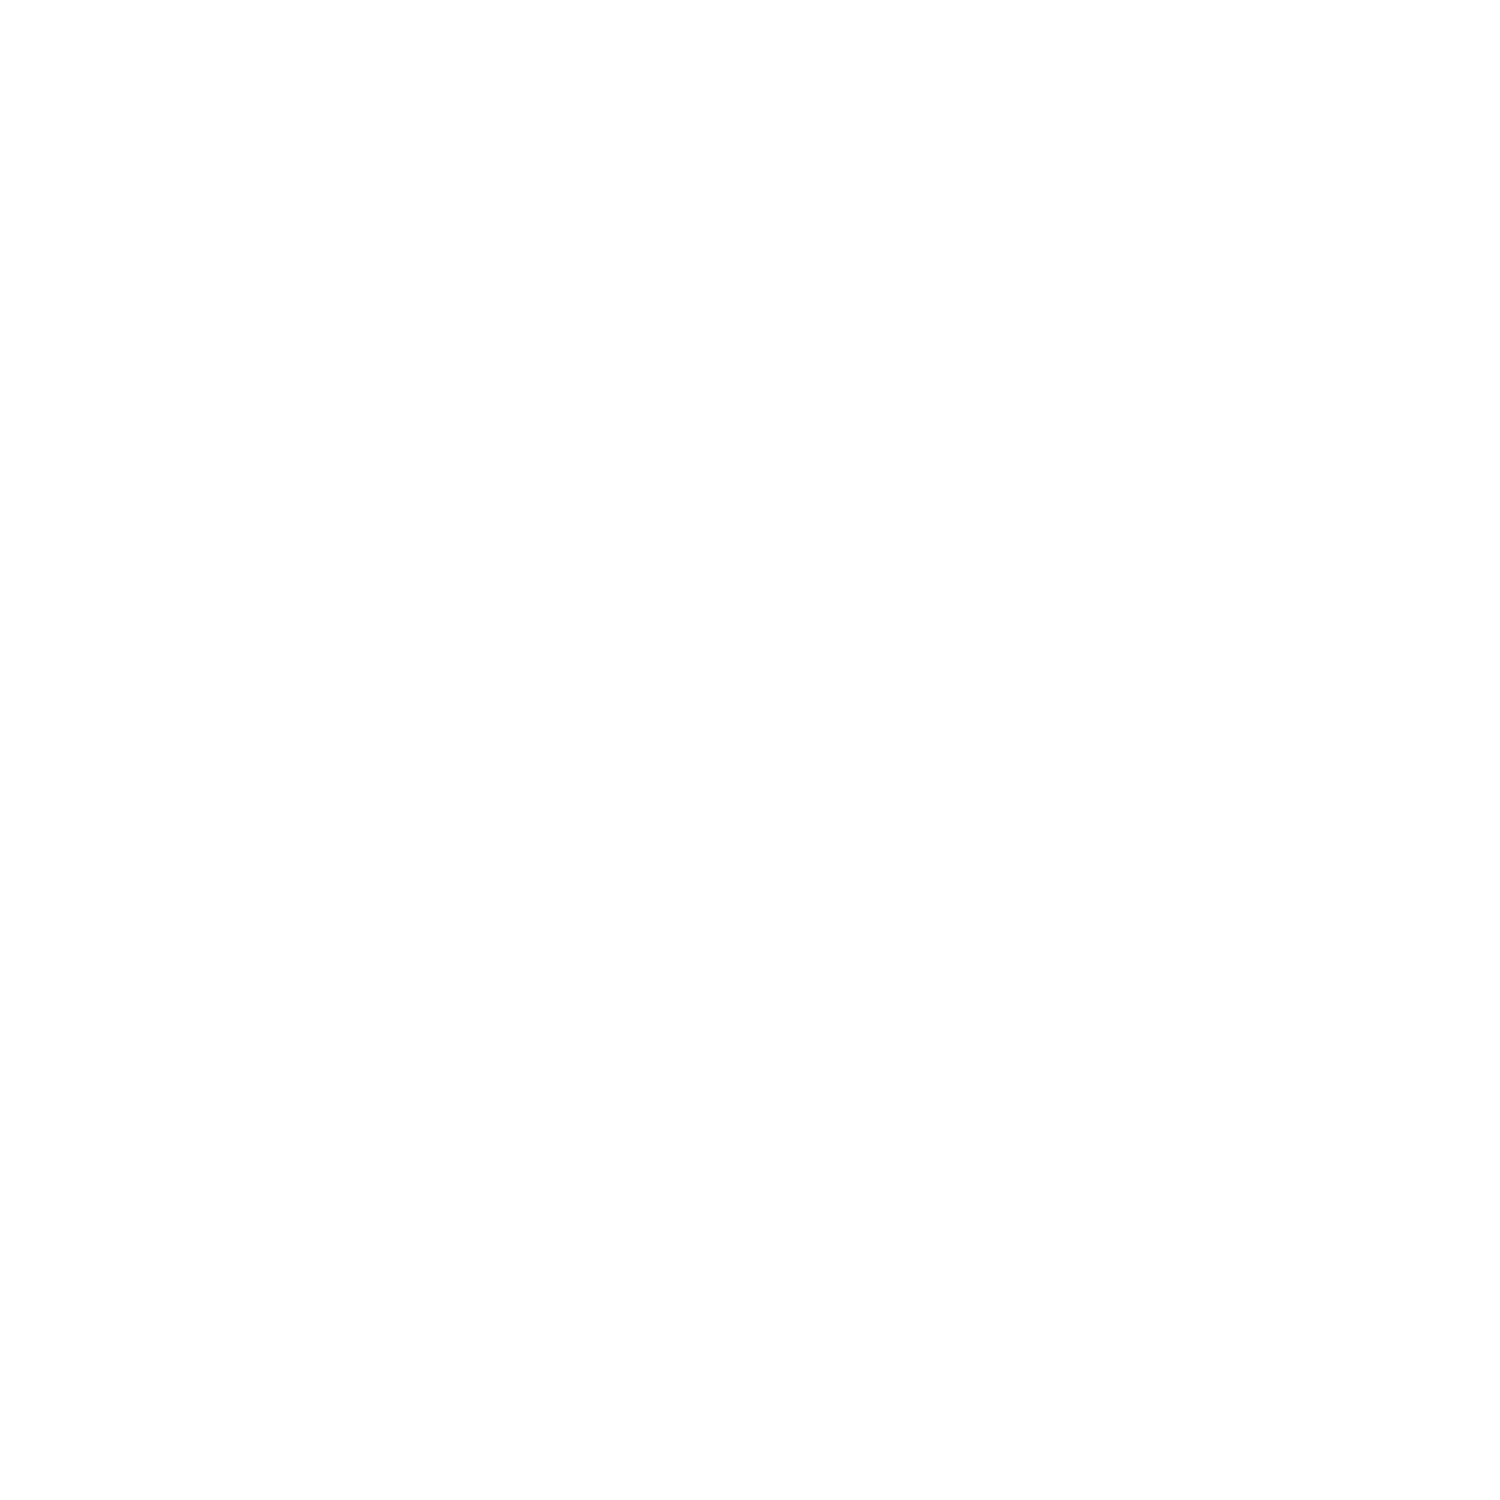 BLTZR WRNR - Dein Navi als Blitzerwarner!